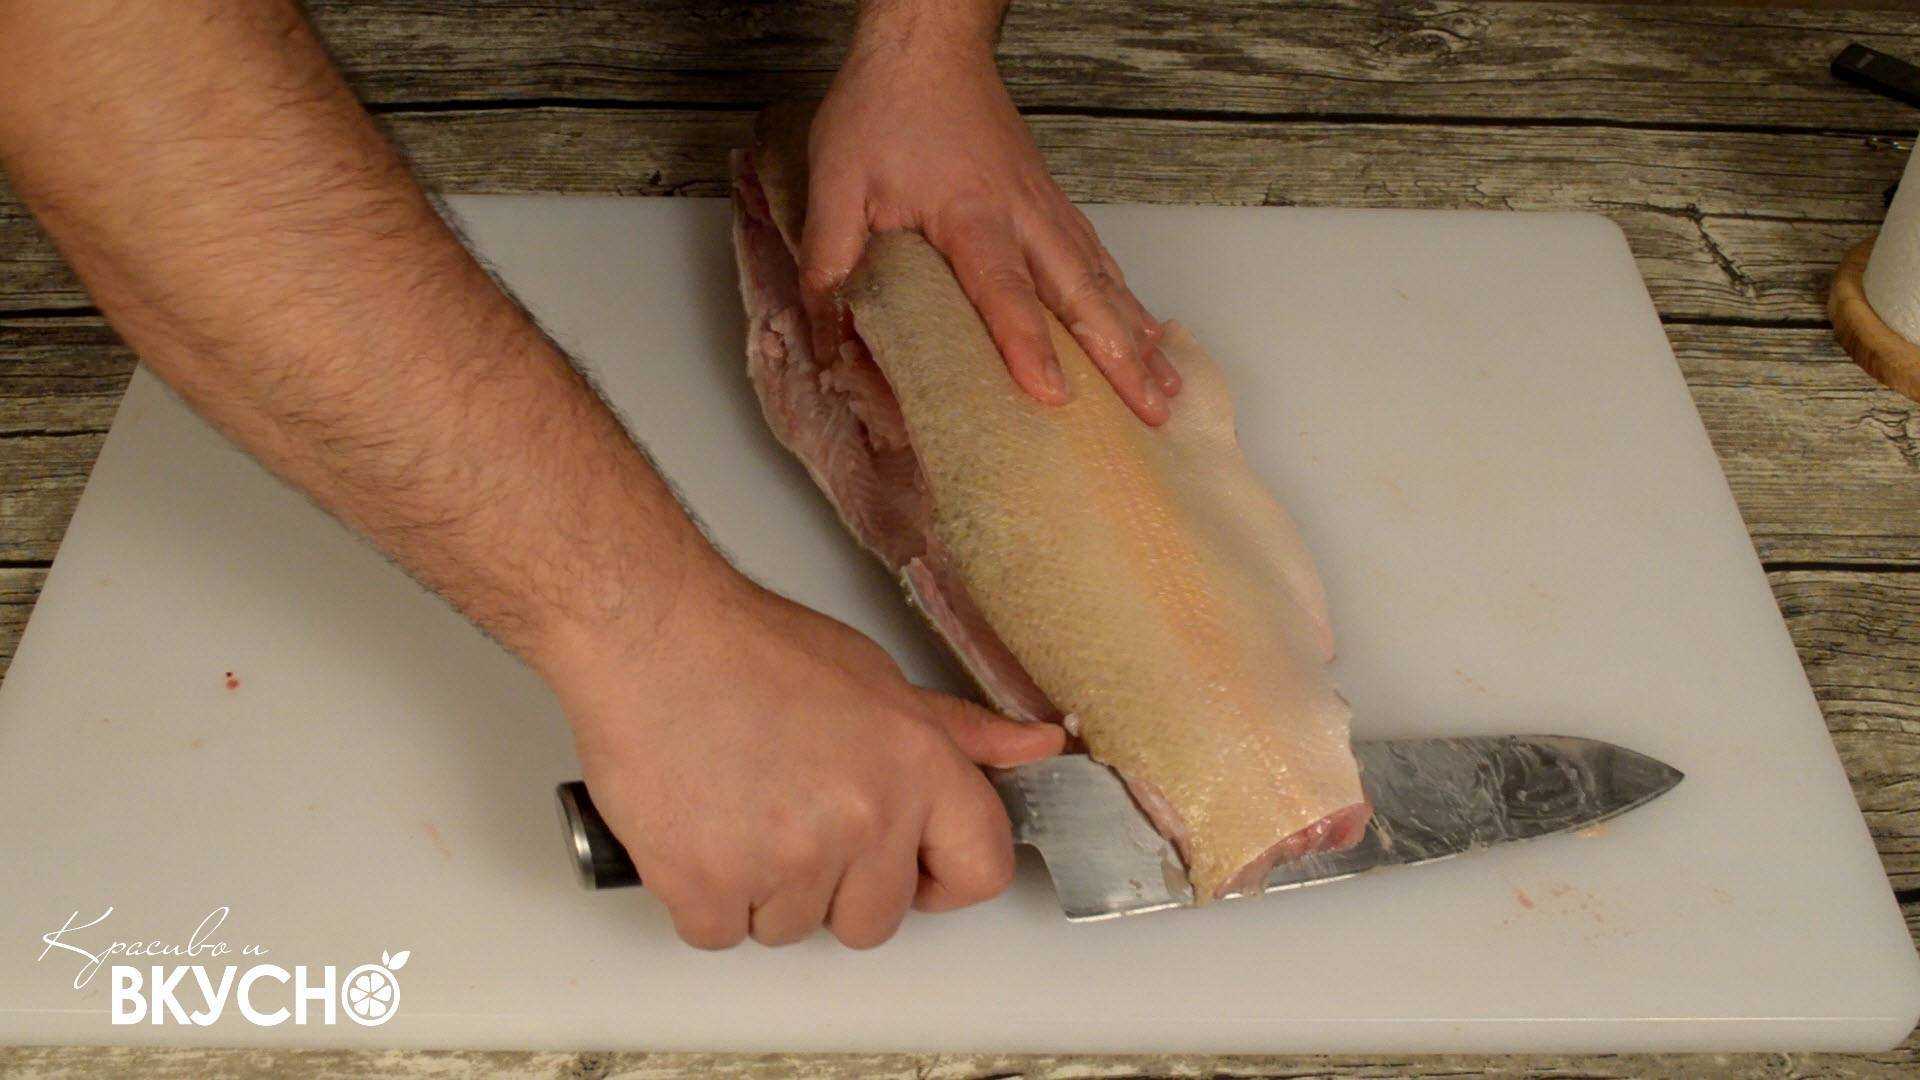 Как правильно разделать лосося